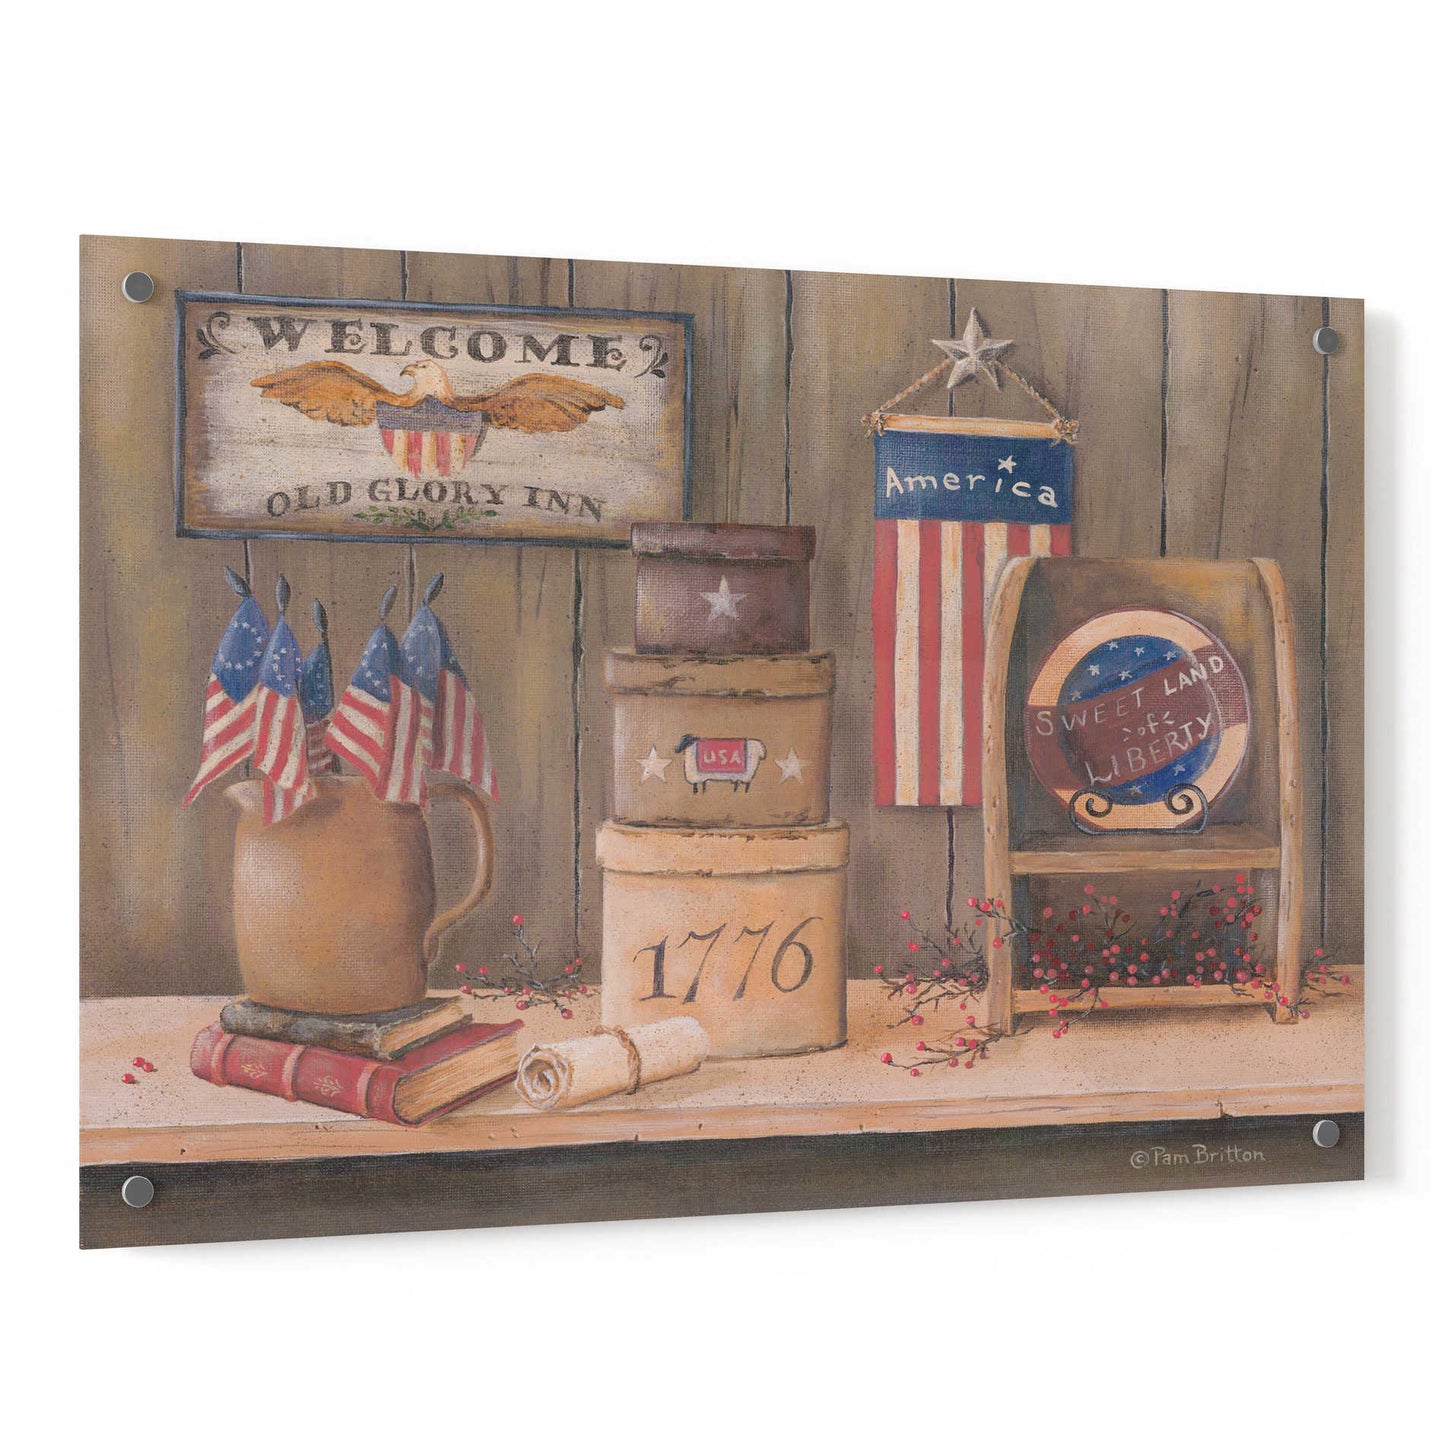 Epic Art 'Sweet Land of Liberty' by Pam Britton, Acrylic Glass Wall Art,36x24